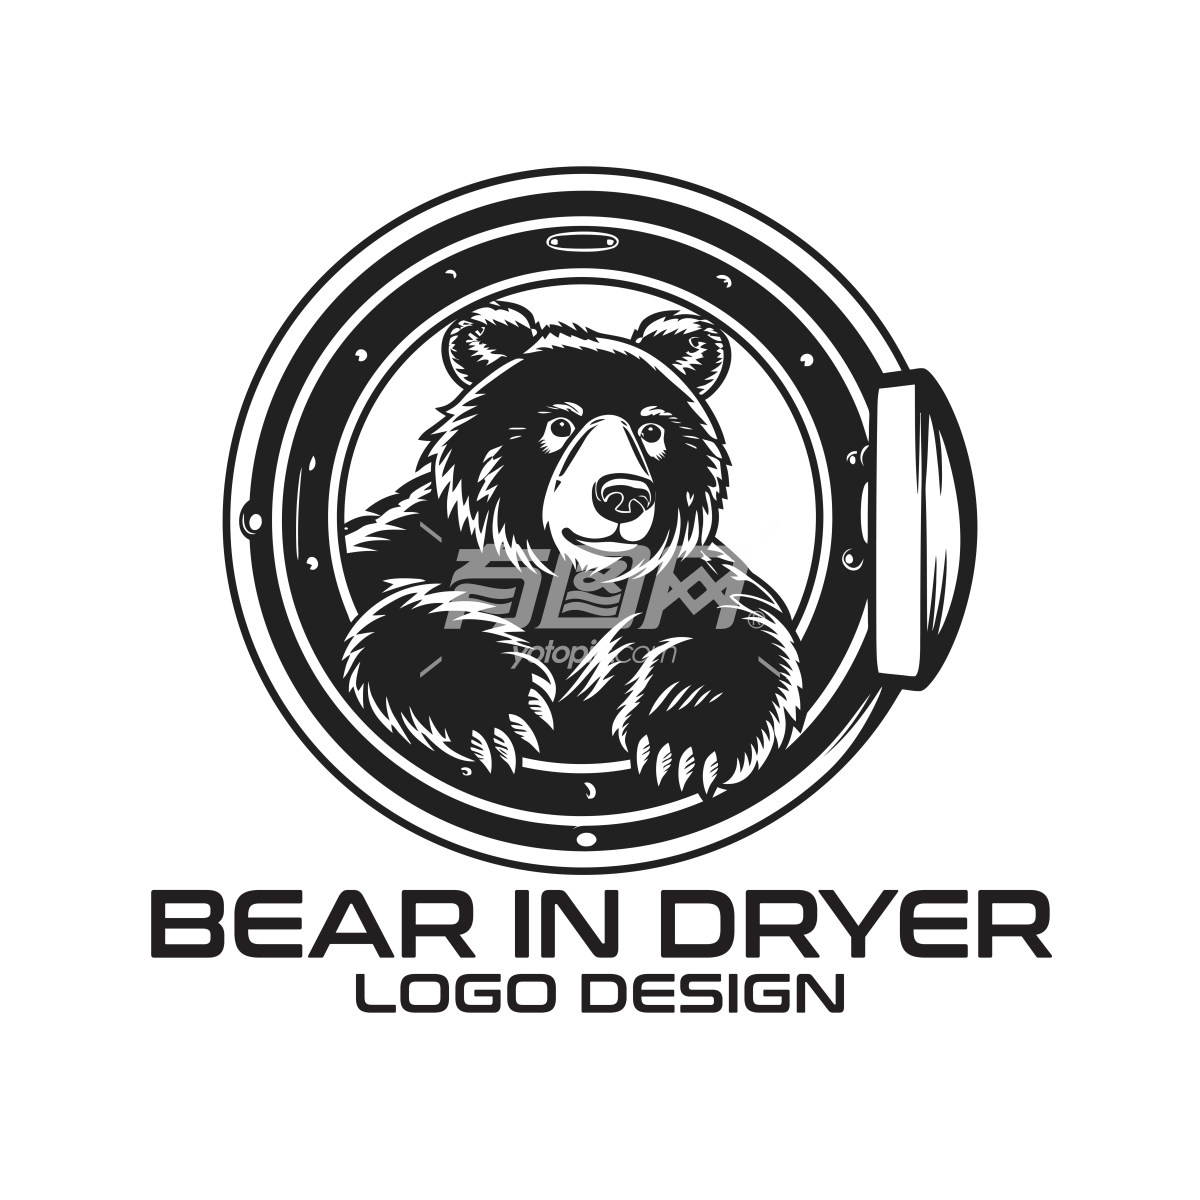 熊在烘干机里标志设计